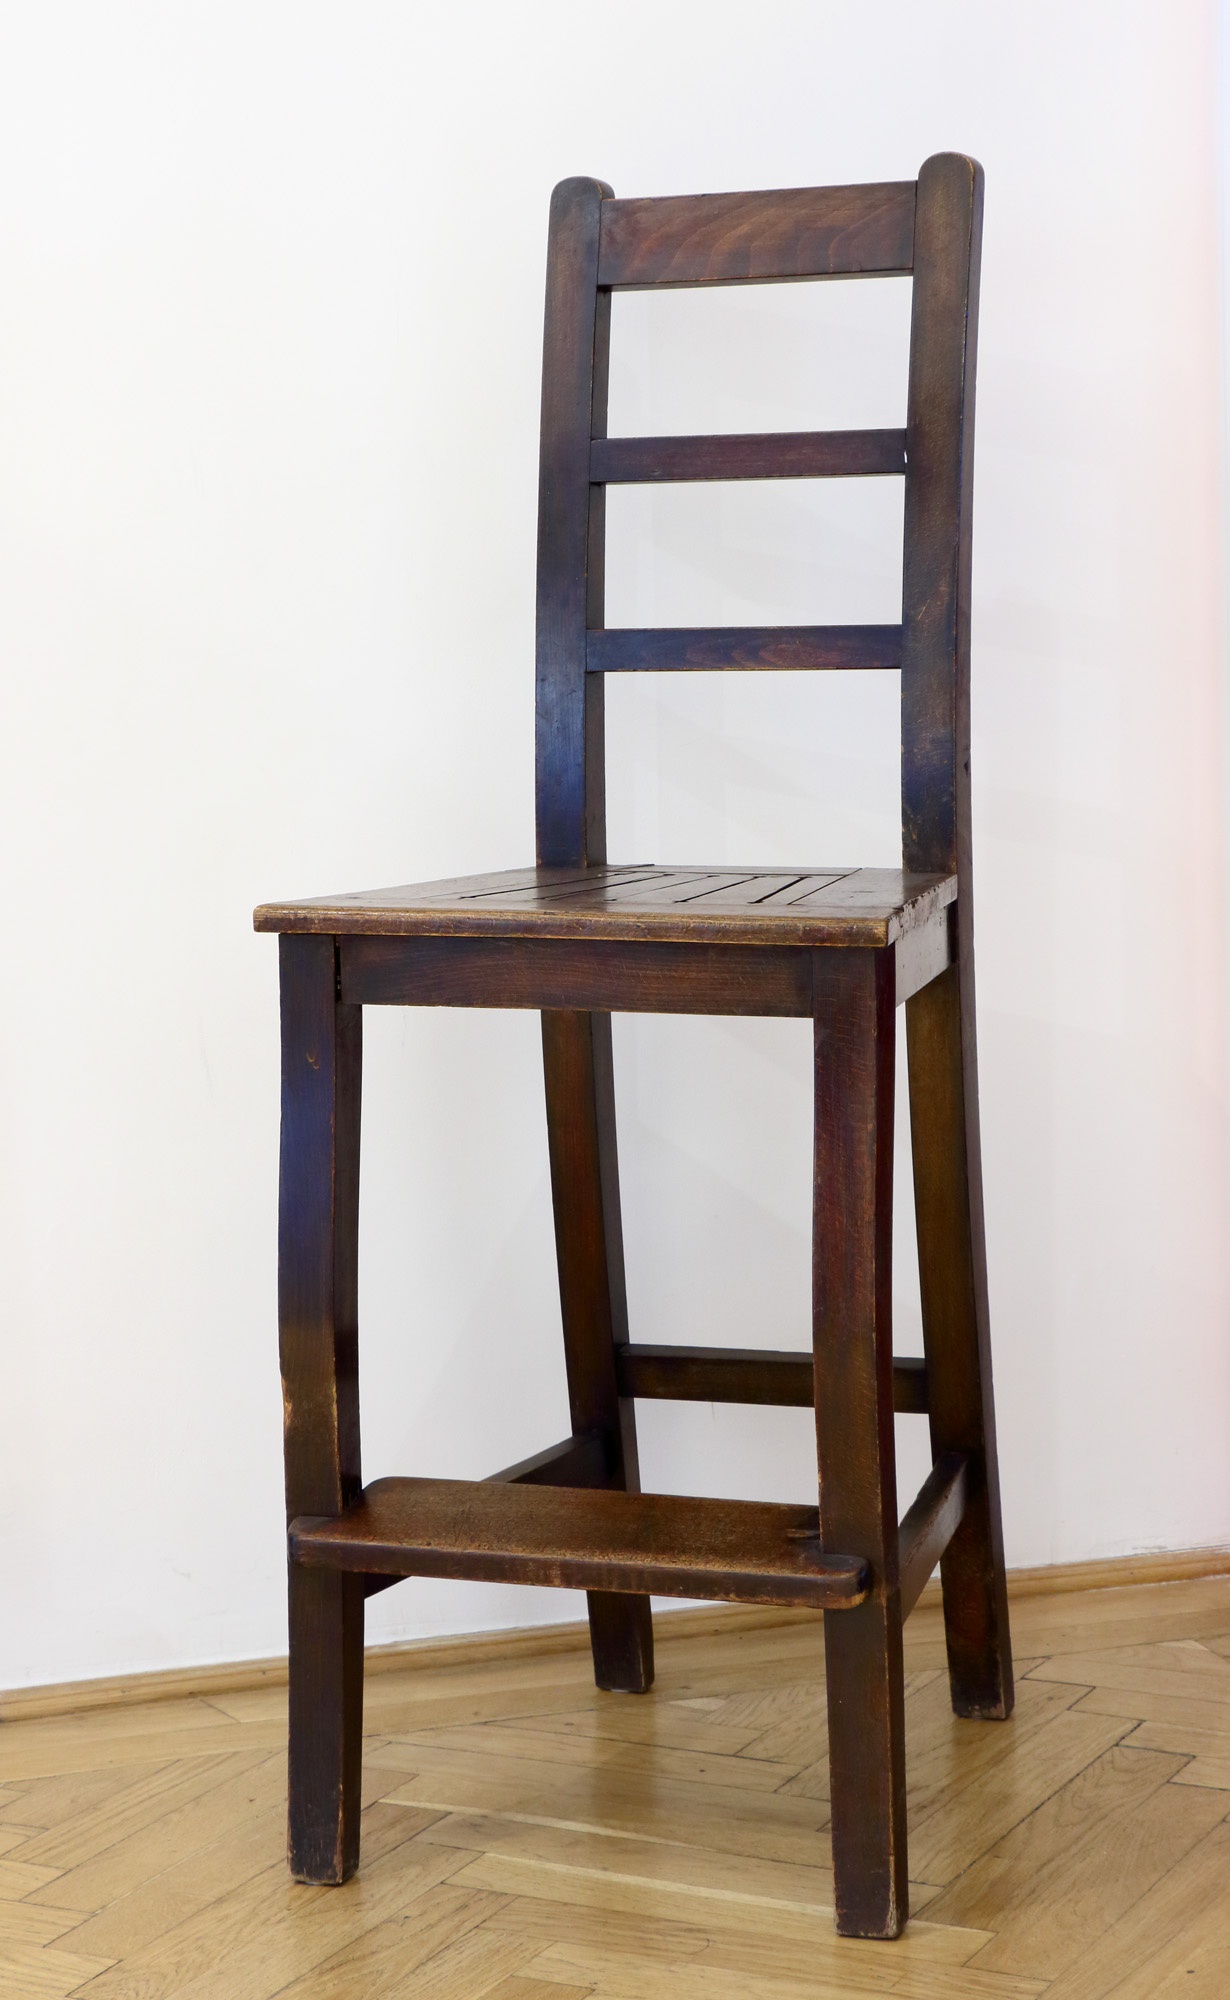 Távírász szék, Hughes betűíró távíróhoz (Postamúzeum CC BY-NC-SA)